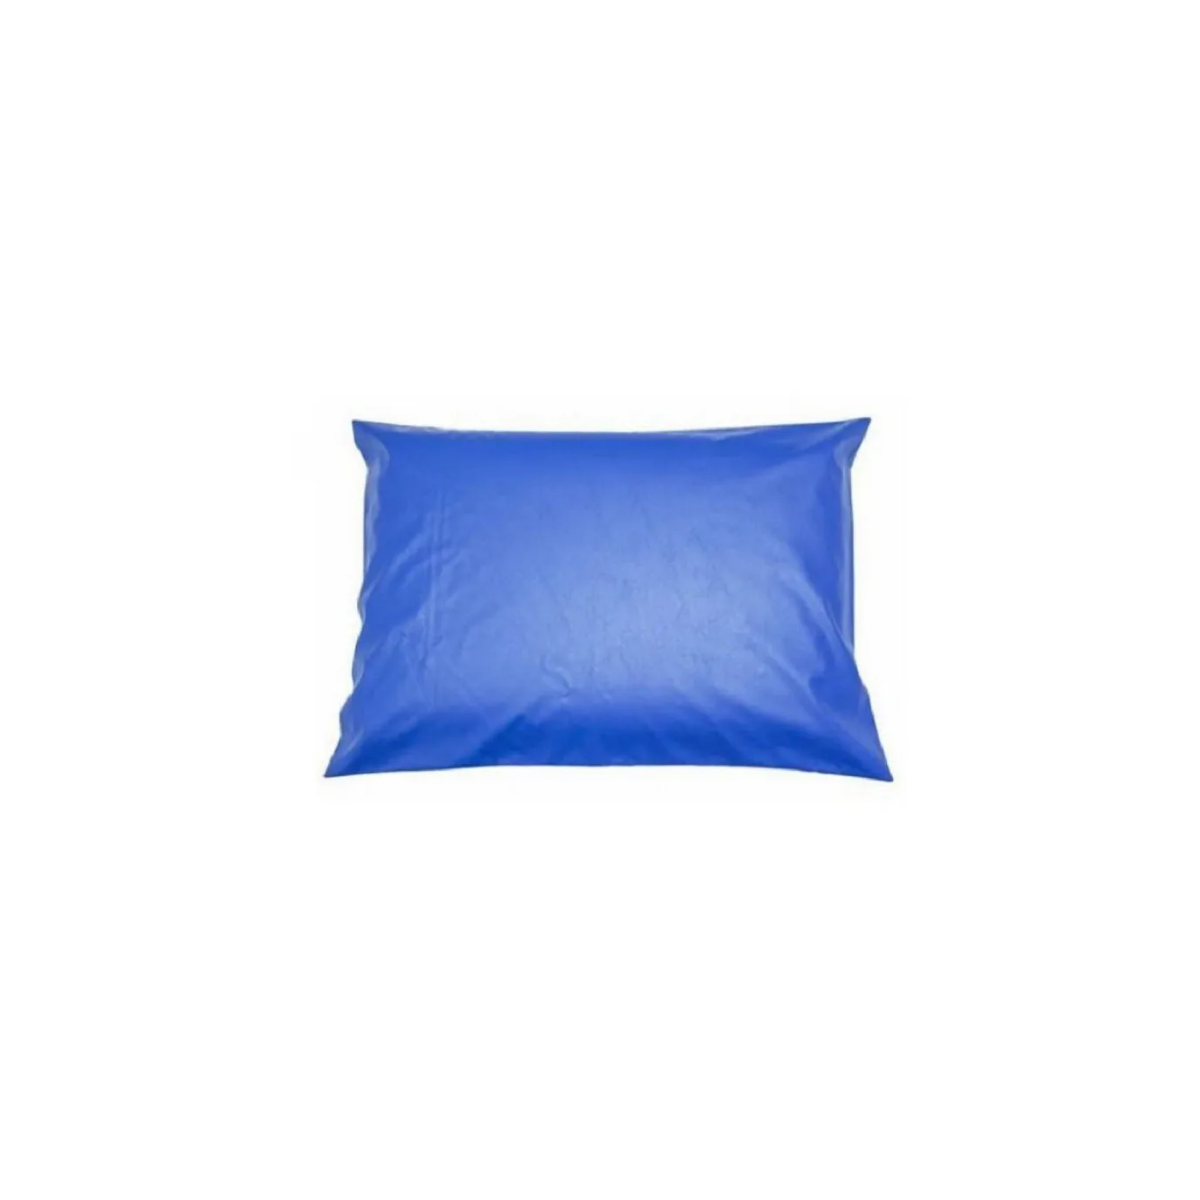 Capa Impermeavel Para Travesseiro Hospitalar Azul - Medida Especial  - CarroCasa